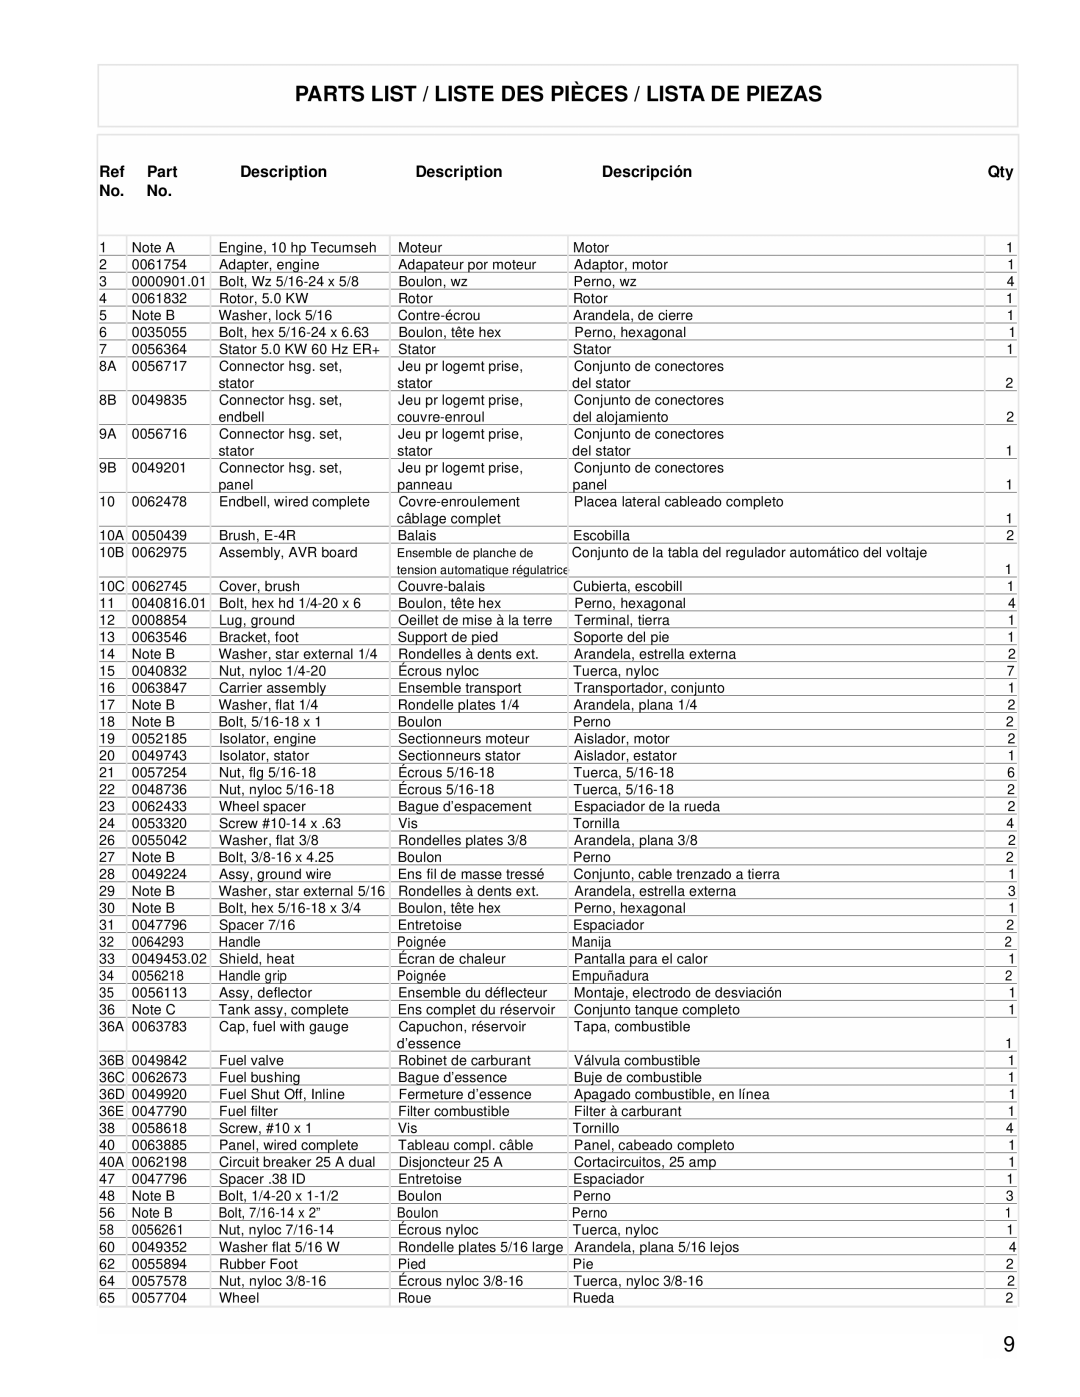 Powermate PC0525304 manual Parts List / Liste Des Pièces / Lista De Piezas, Description, Descripción 